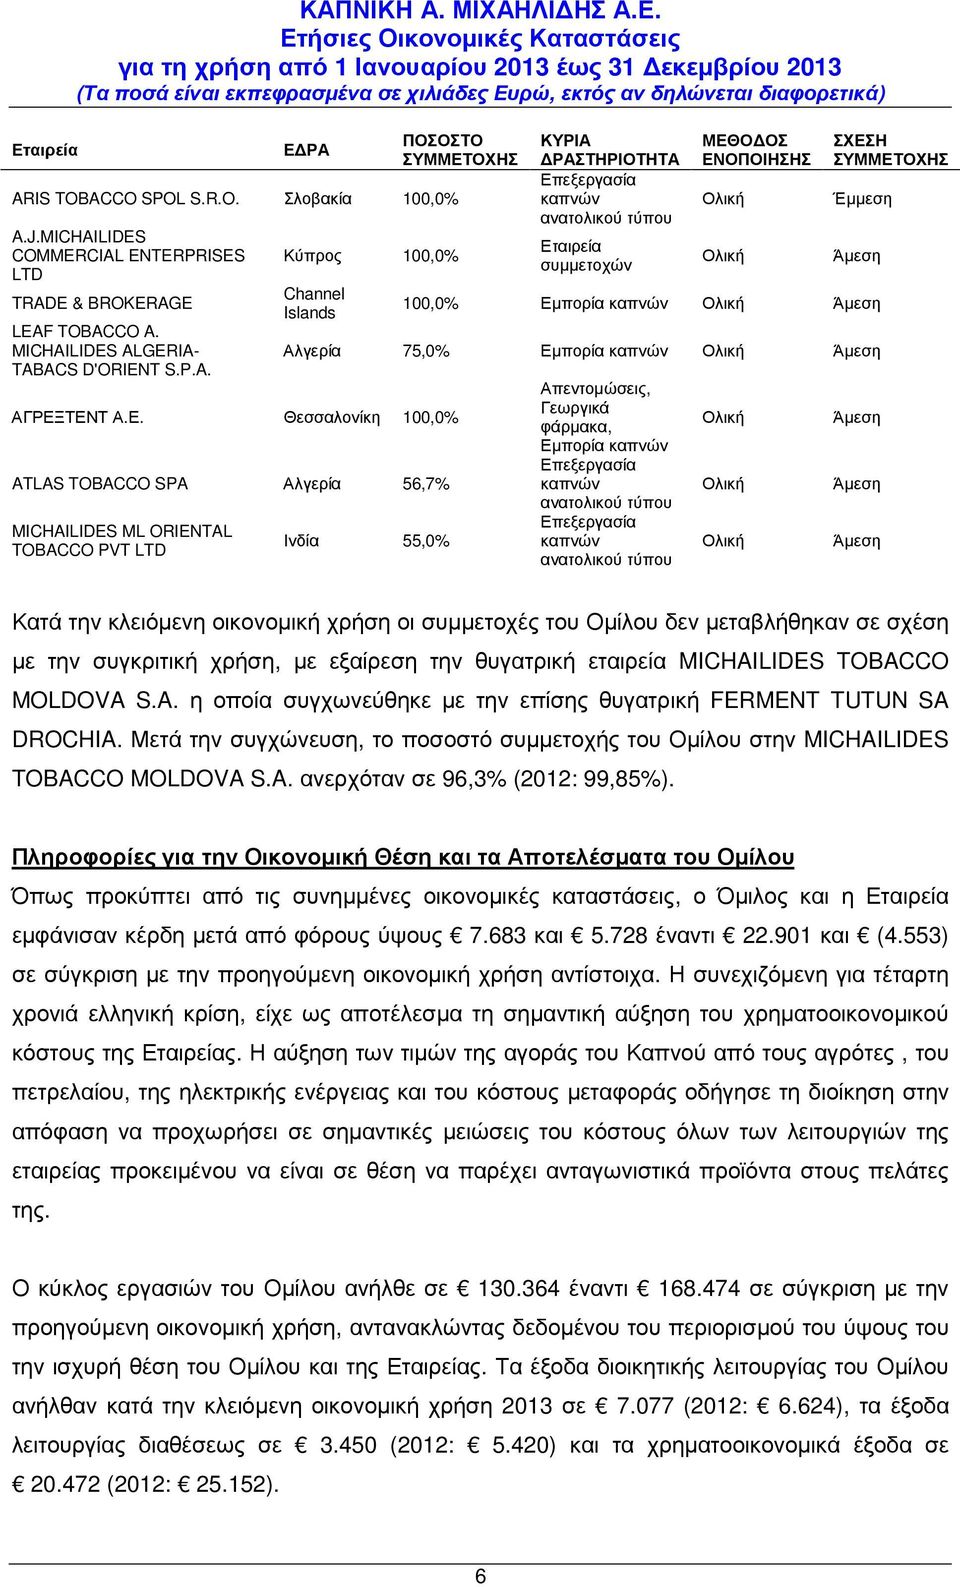 ΕΝΟΠΟΙΗΣΗΣ Ολική Ολική ΣΧΕΣΗ ΣΥΜΜΕΤΟΧΗΣ Έµµεση Άµεση 100,0% Εµπορία καπνών Ολική Άµεση Αλγερία 75,0% Εµπορία καπνών Ολική Άµεση Ινδία 55,0% Απεντοµώσεις, Γεωργικά φάρµακα, Εµπορία καπνών Επεξεργασία